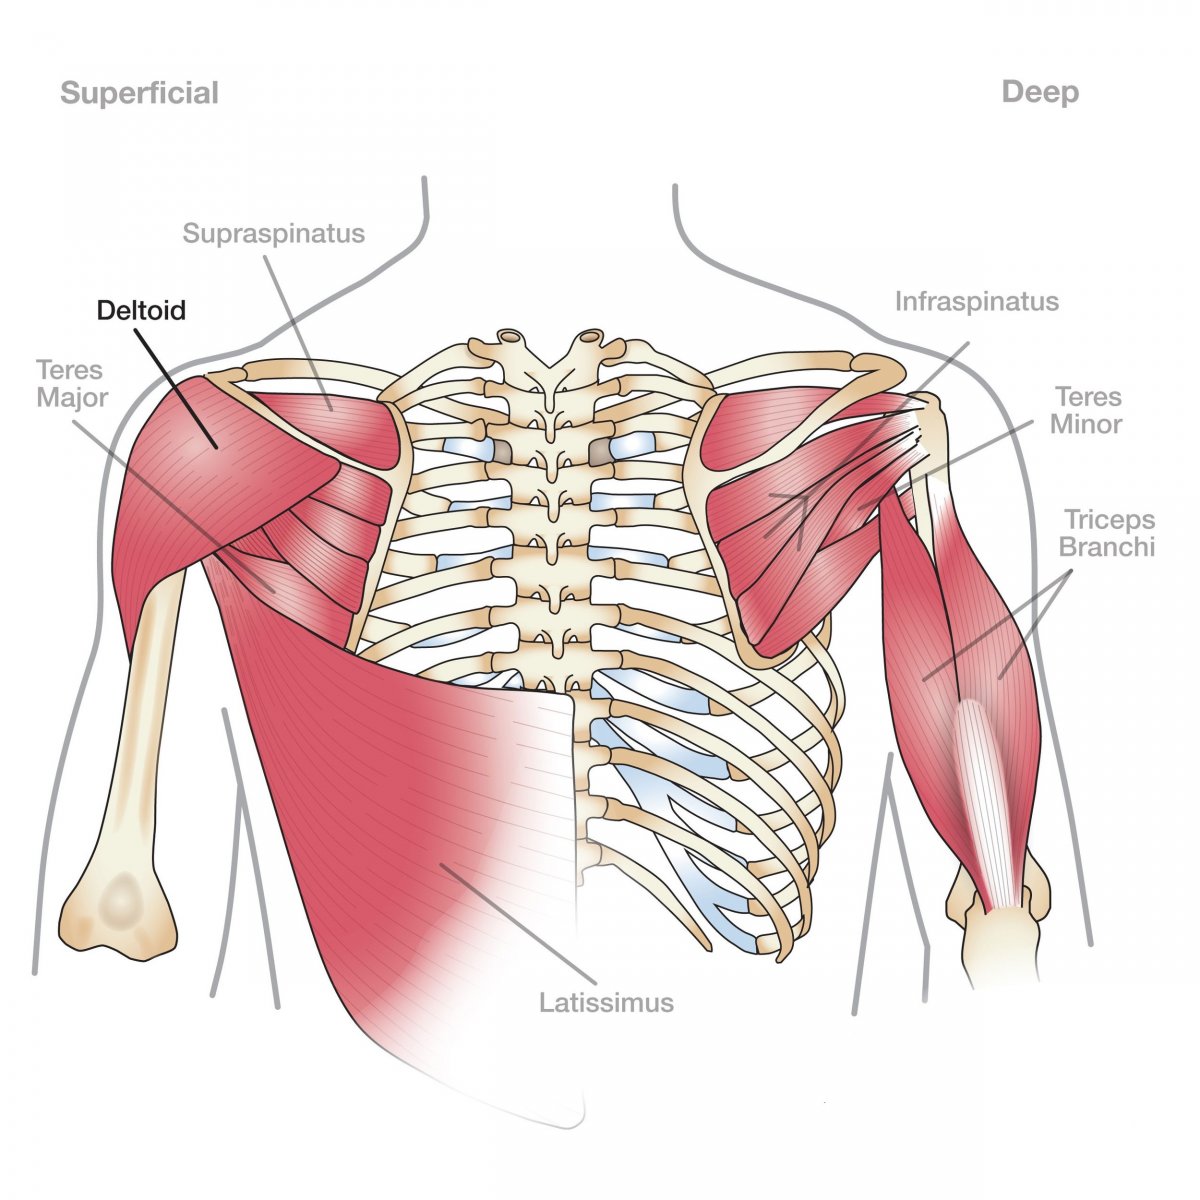 Двуглавая мышца плеча